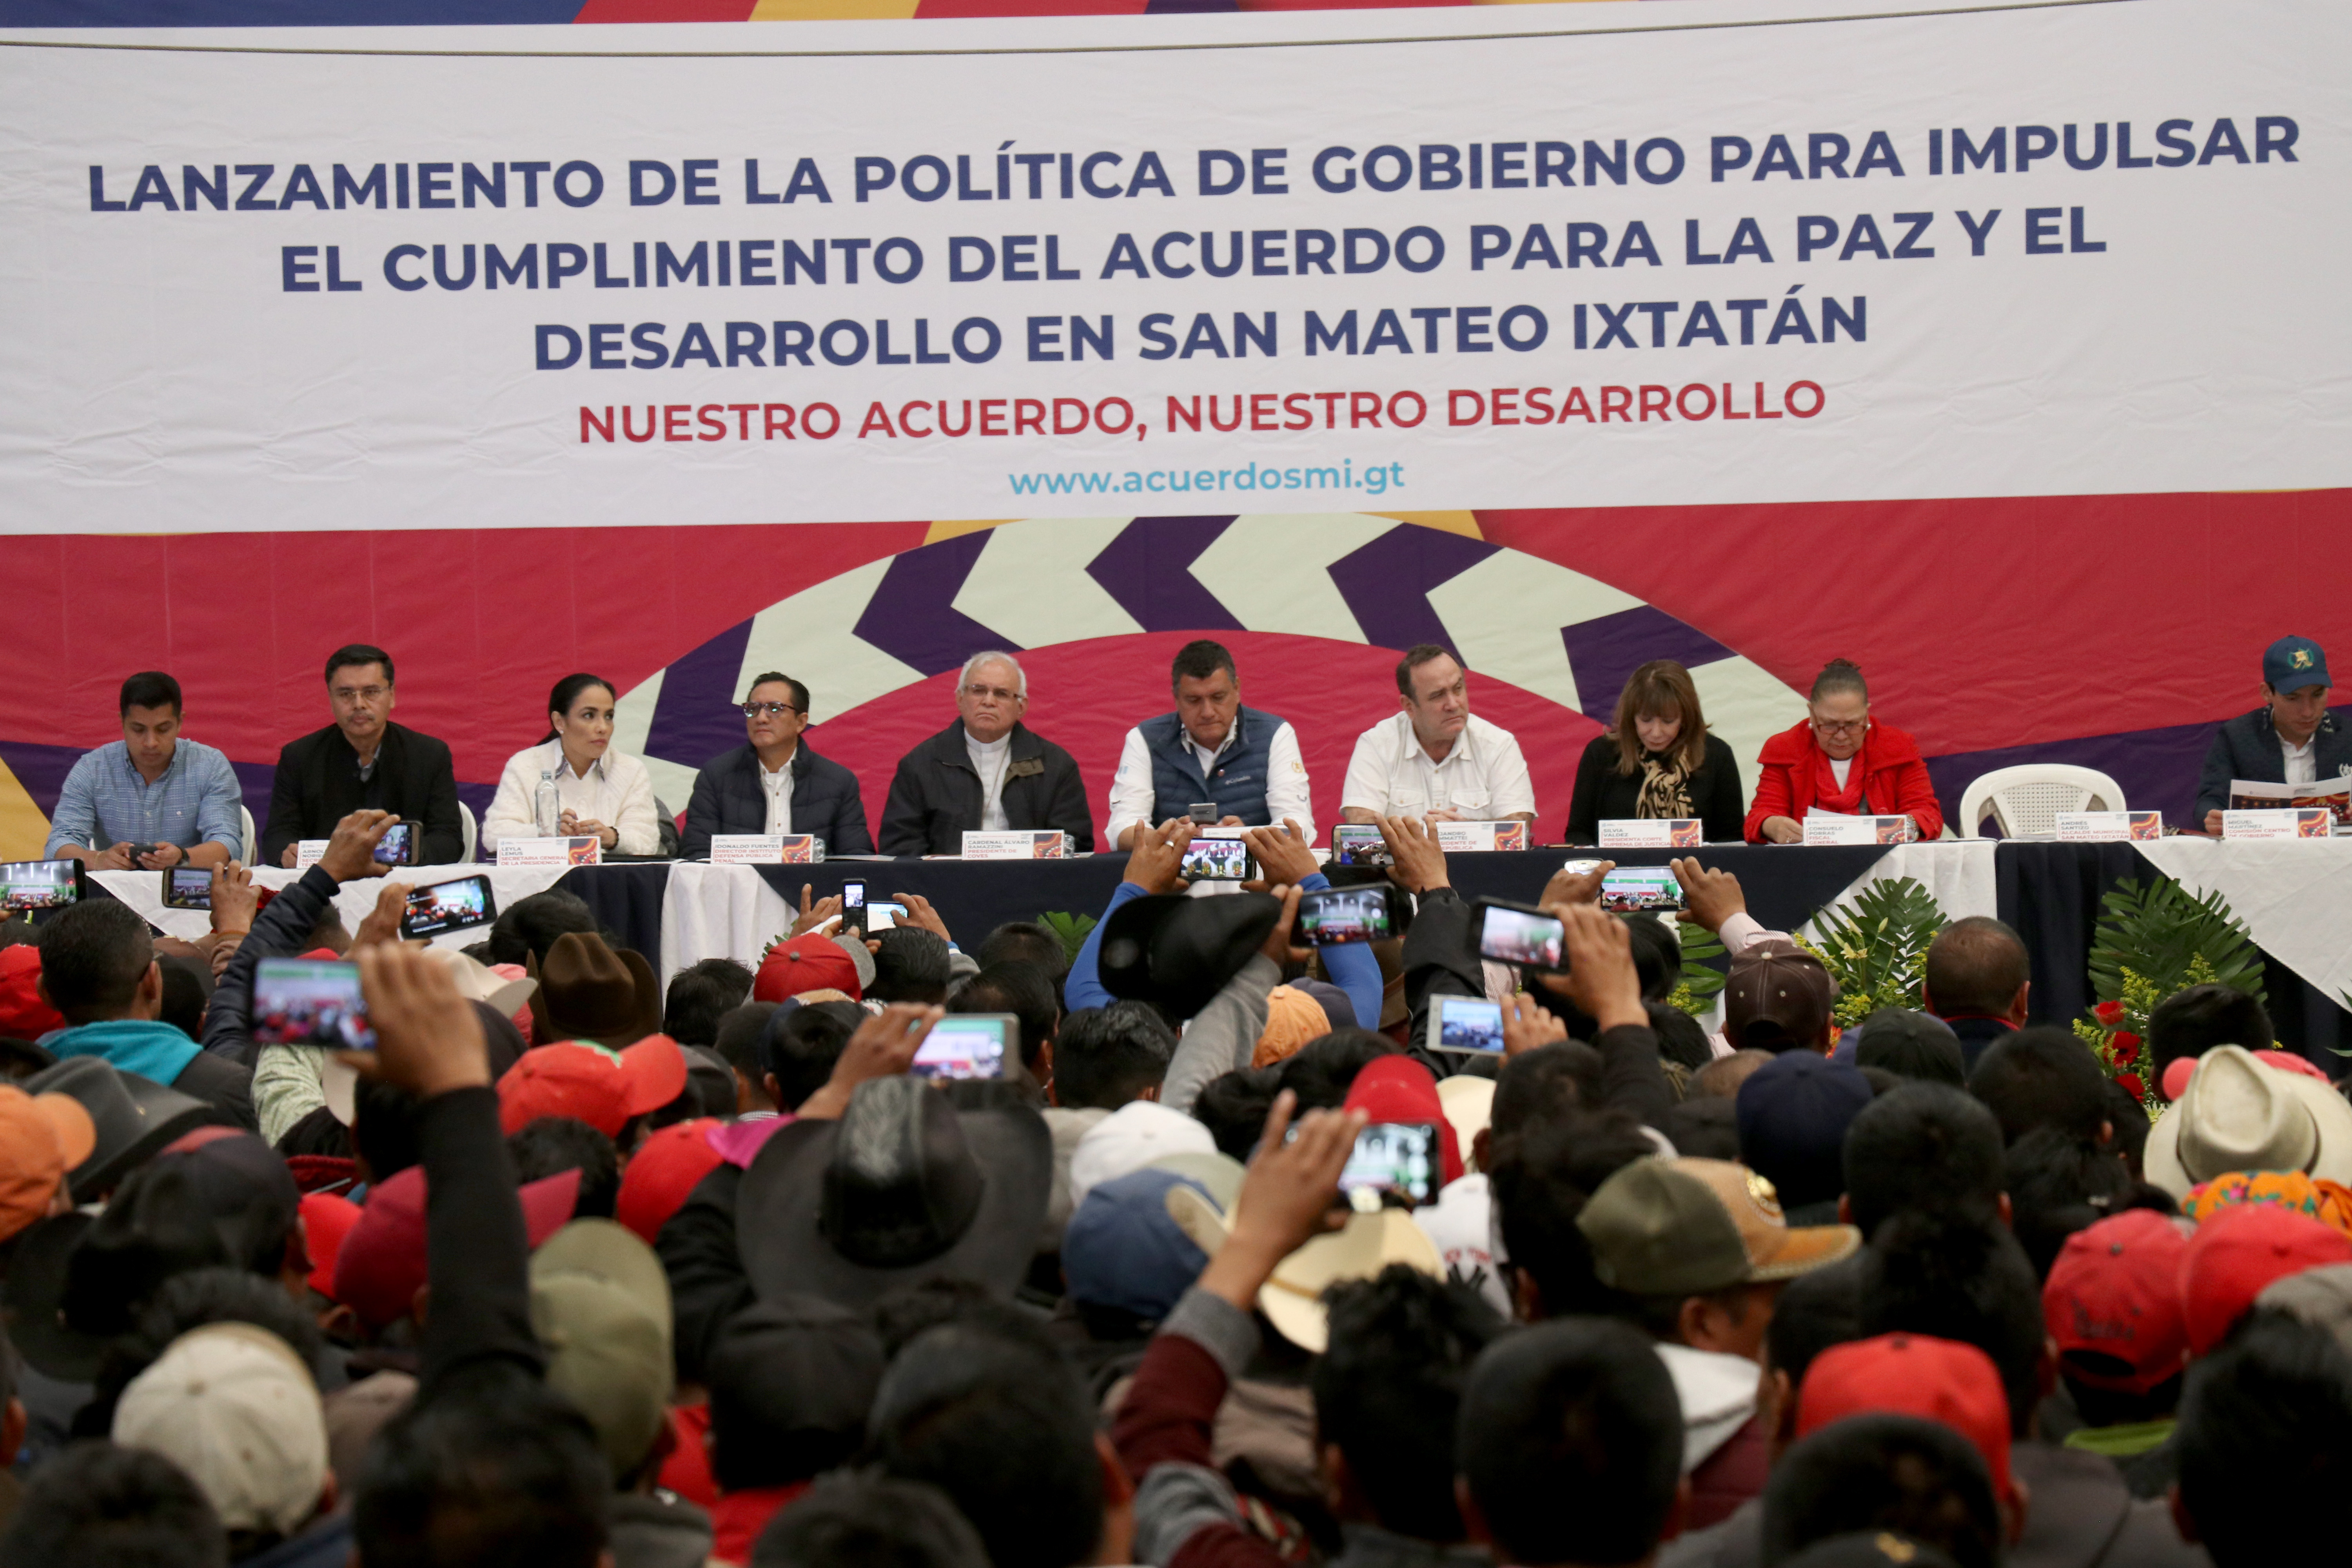 El gobierno de Alejandro Giammattei ratifio el acuerdo de Paz y Desarrollo de San Mateo Ixatatán, donde arrancaron varias obras viales. (Foto Prensa Libre: Mike Castillo)